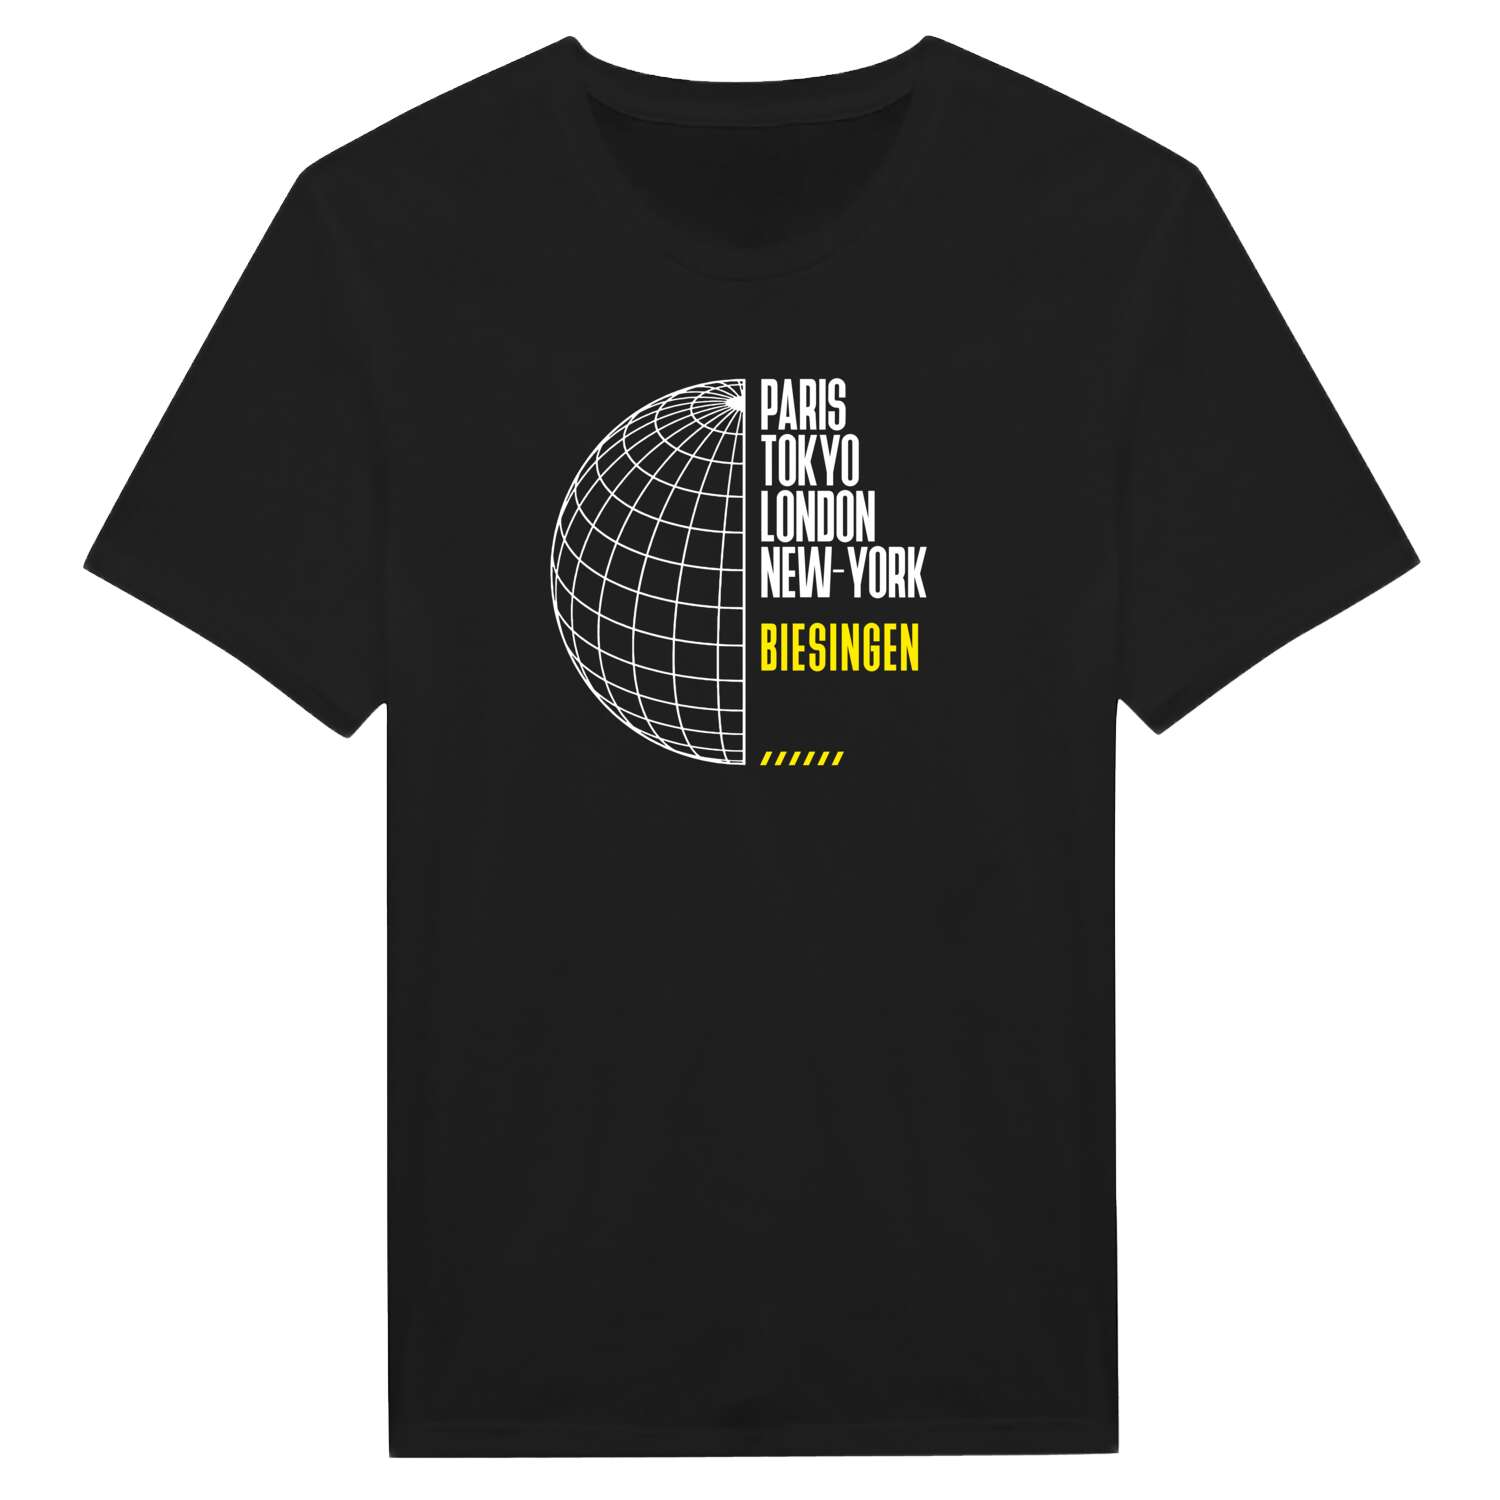 Biesingen T-Shirt »Paris Tokyo London«